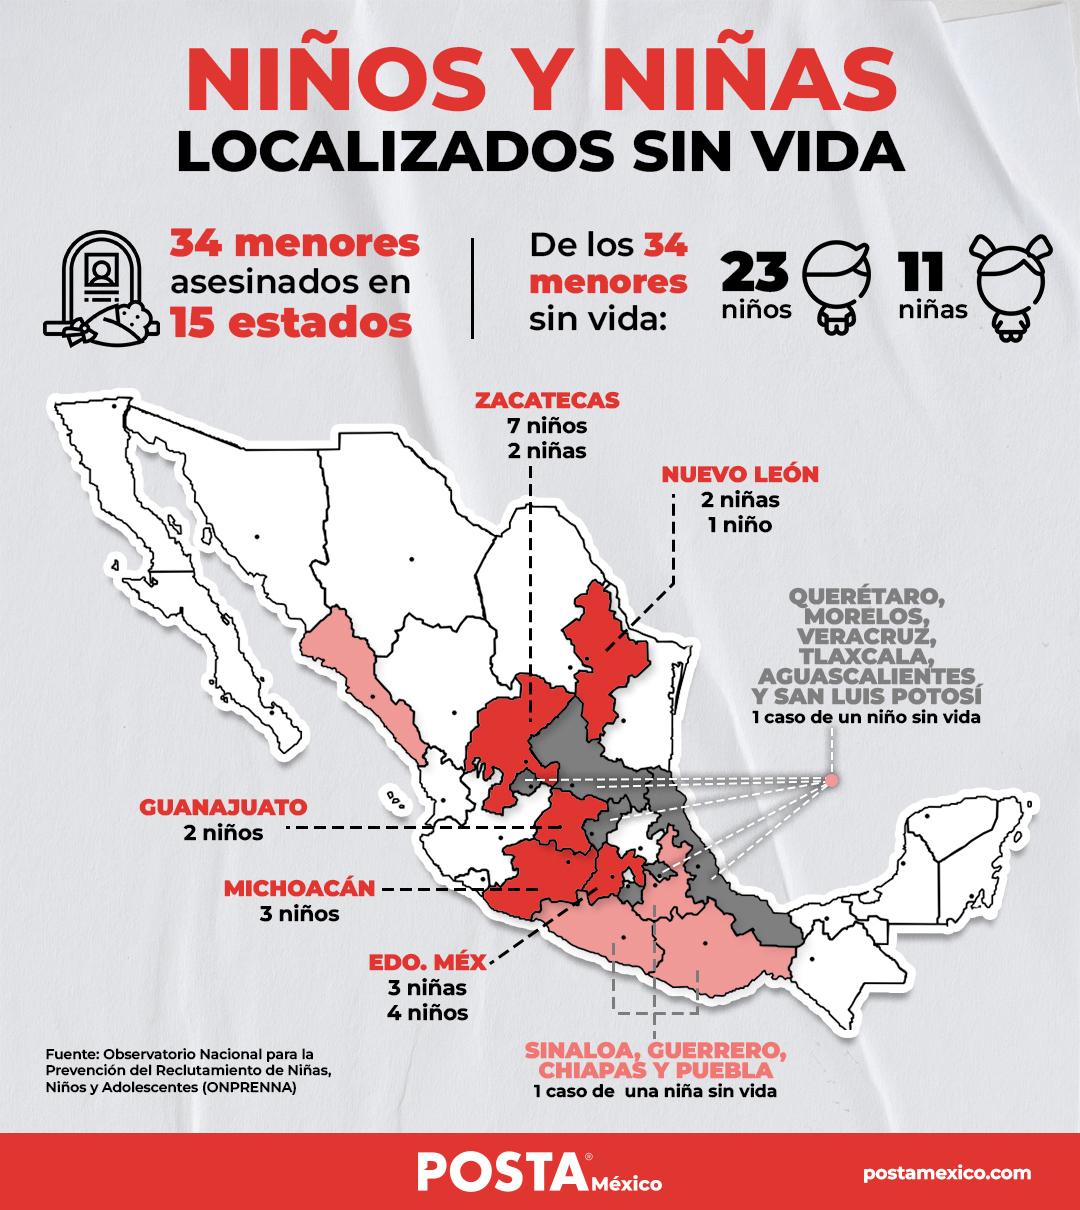 Gráfico de niños y niñas localizados sin vida en México